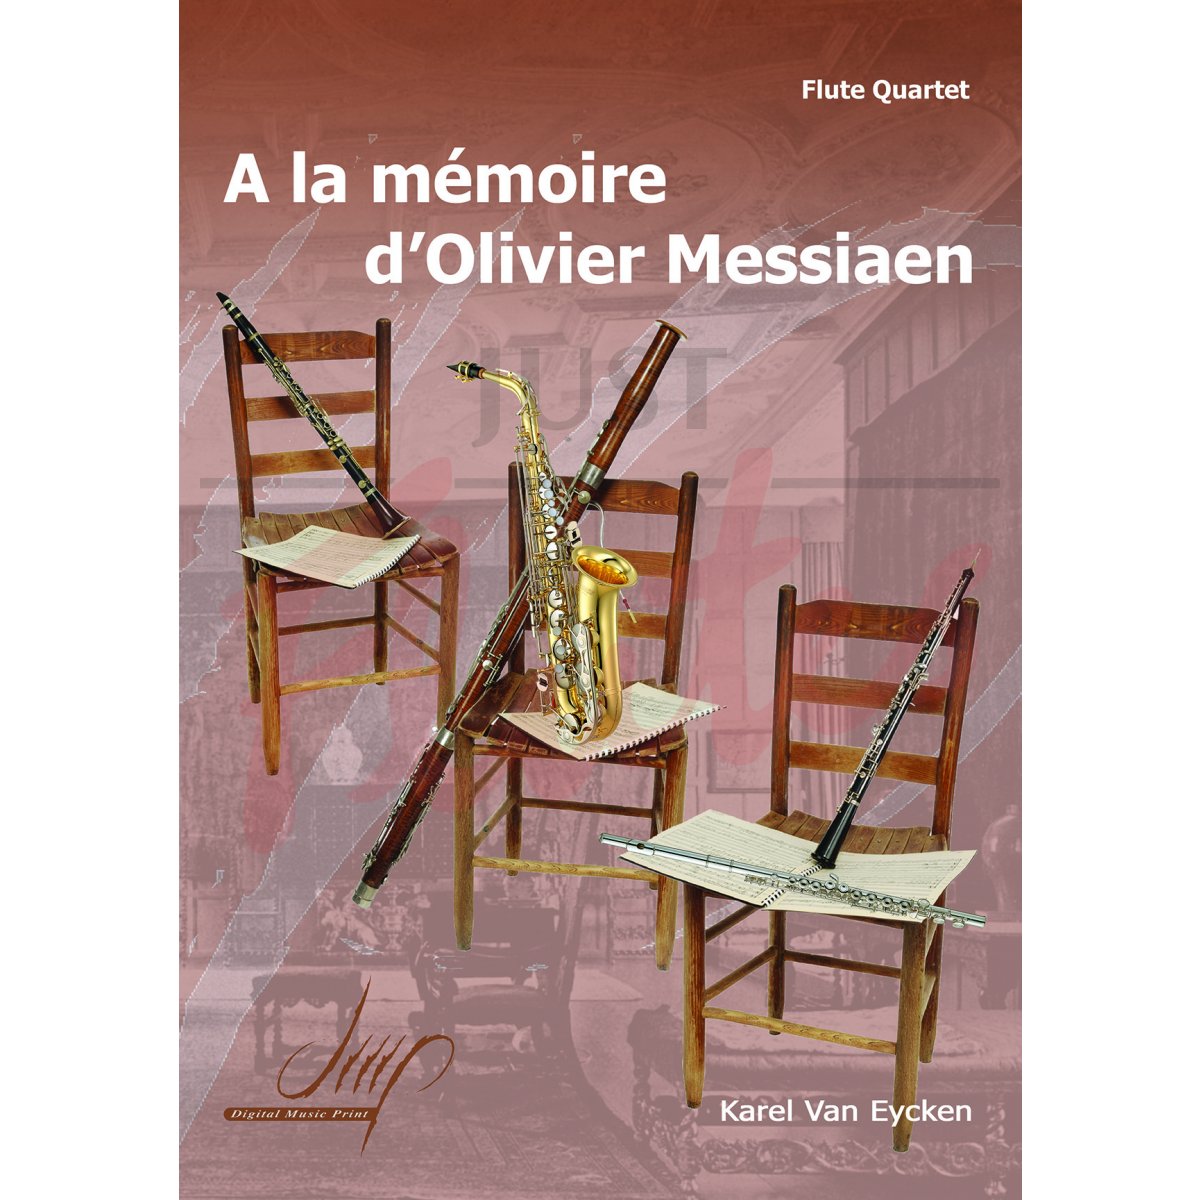 A la mémoire d'Olivier Messiaen